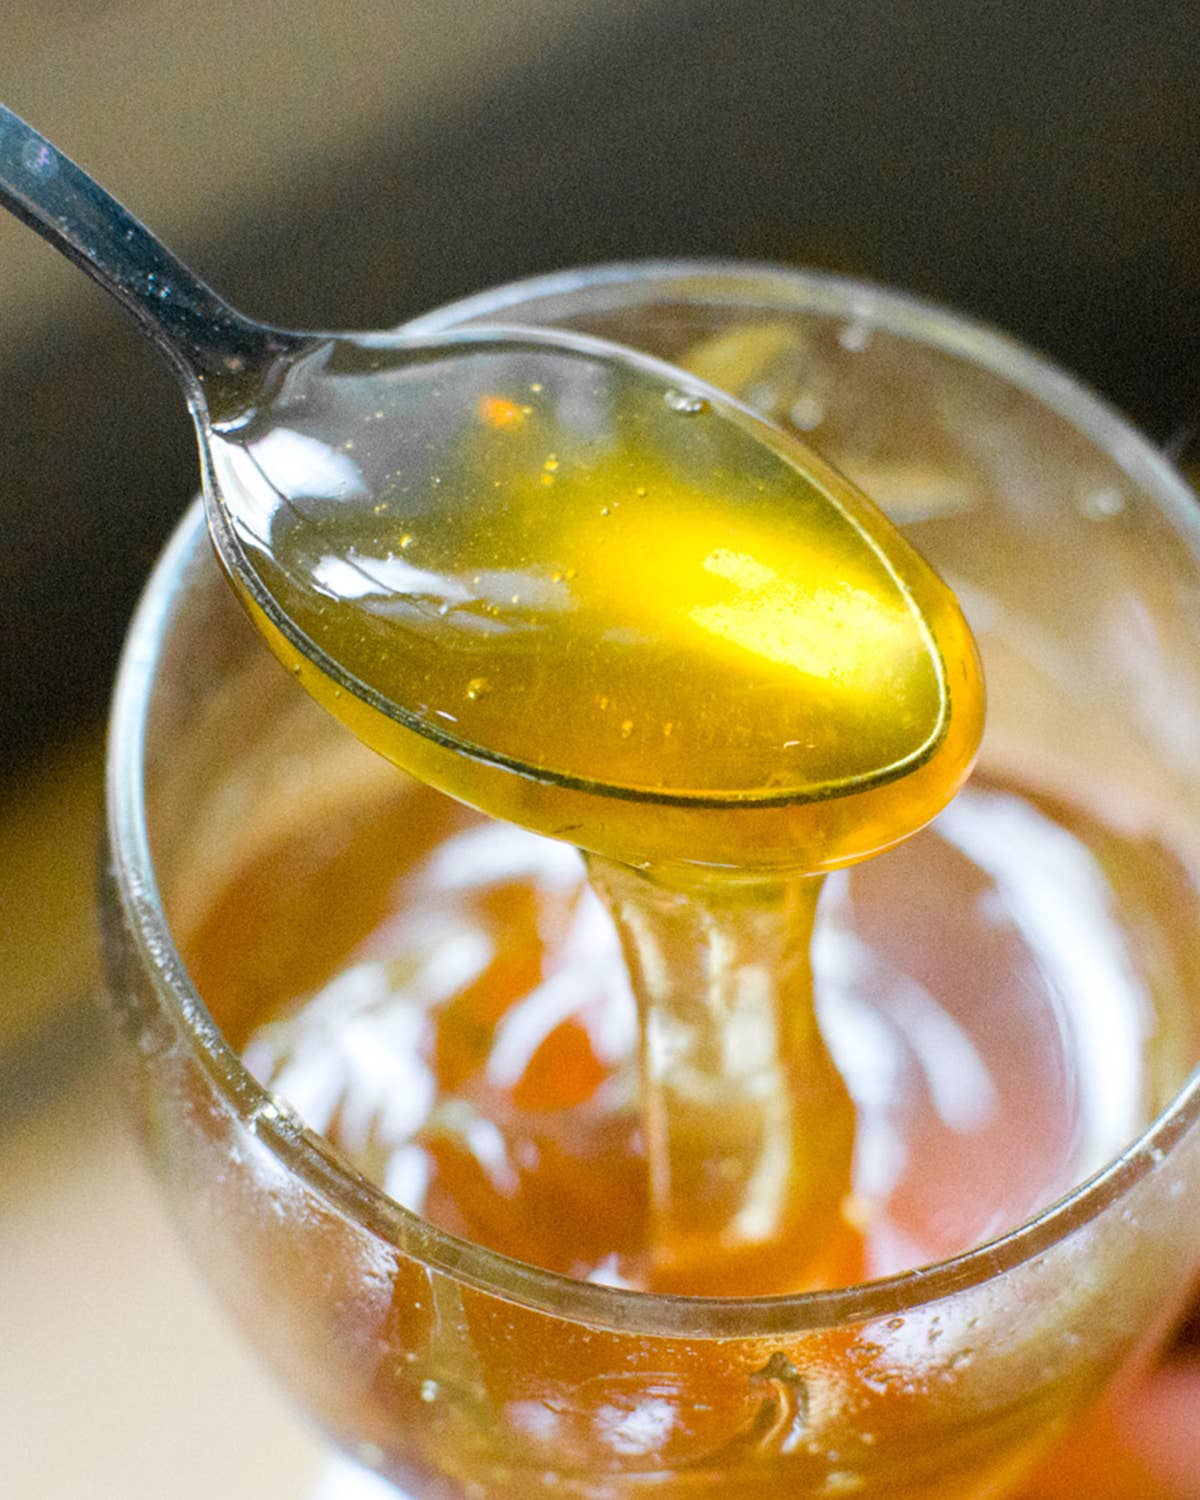 Why South Korea Goes Crazy for Honey